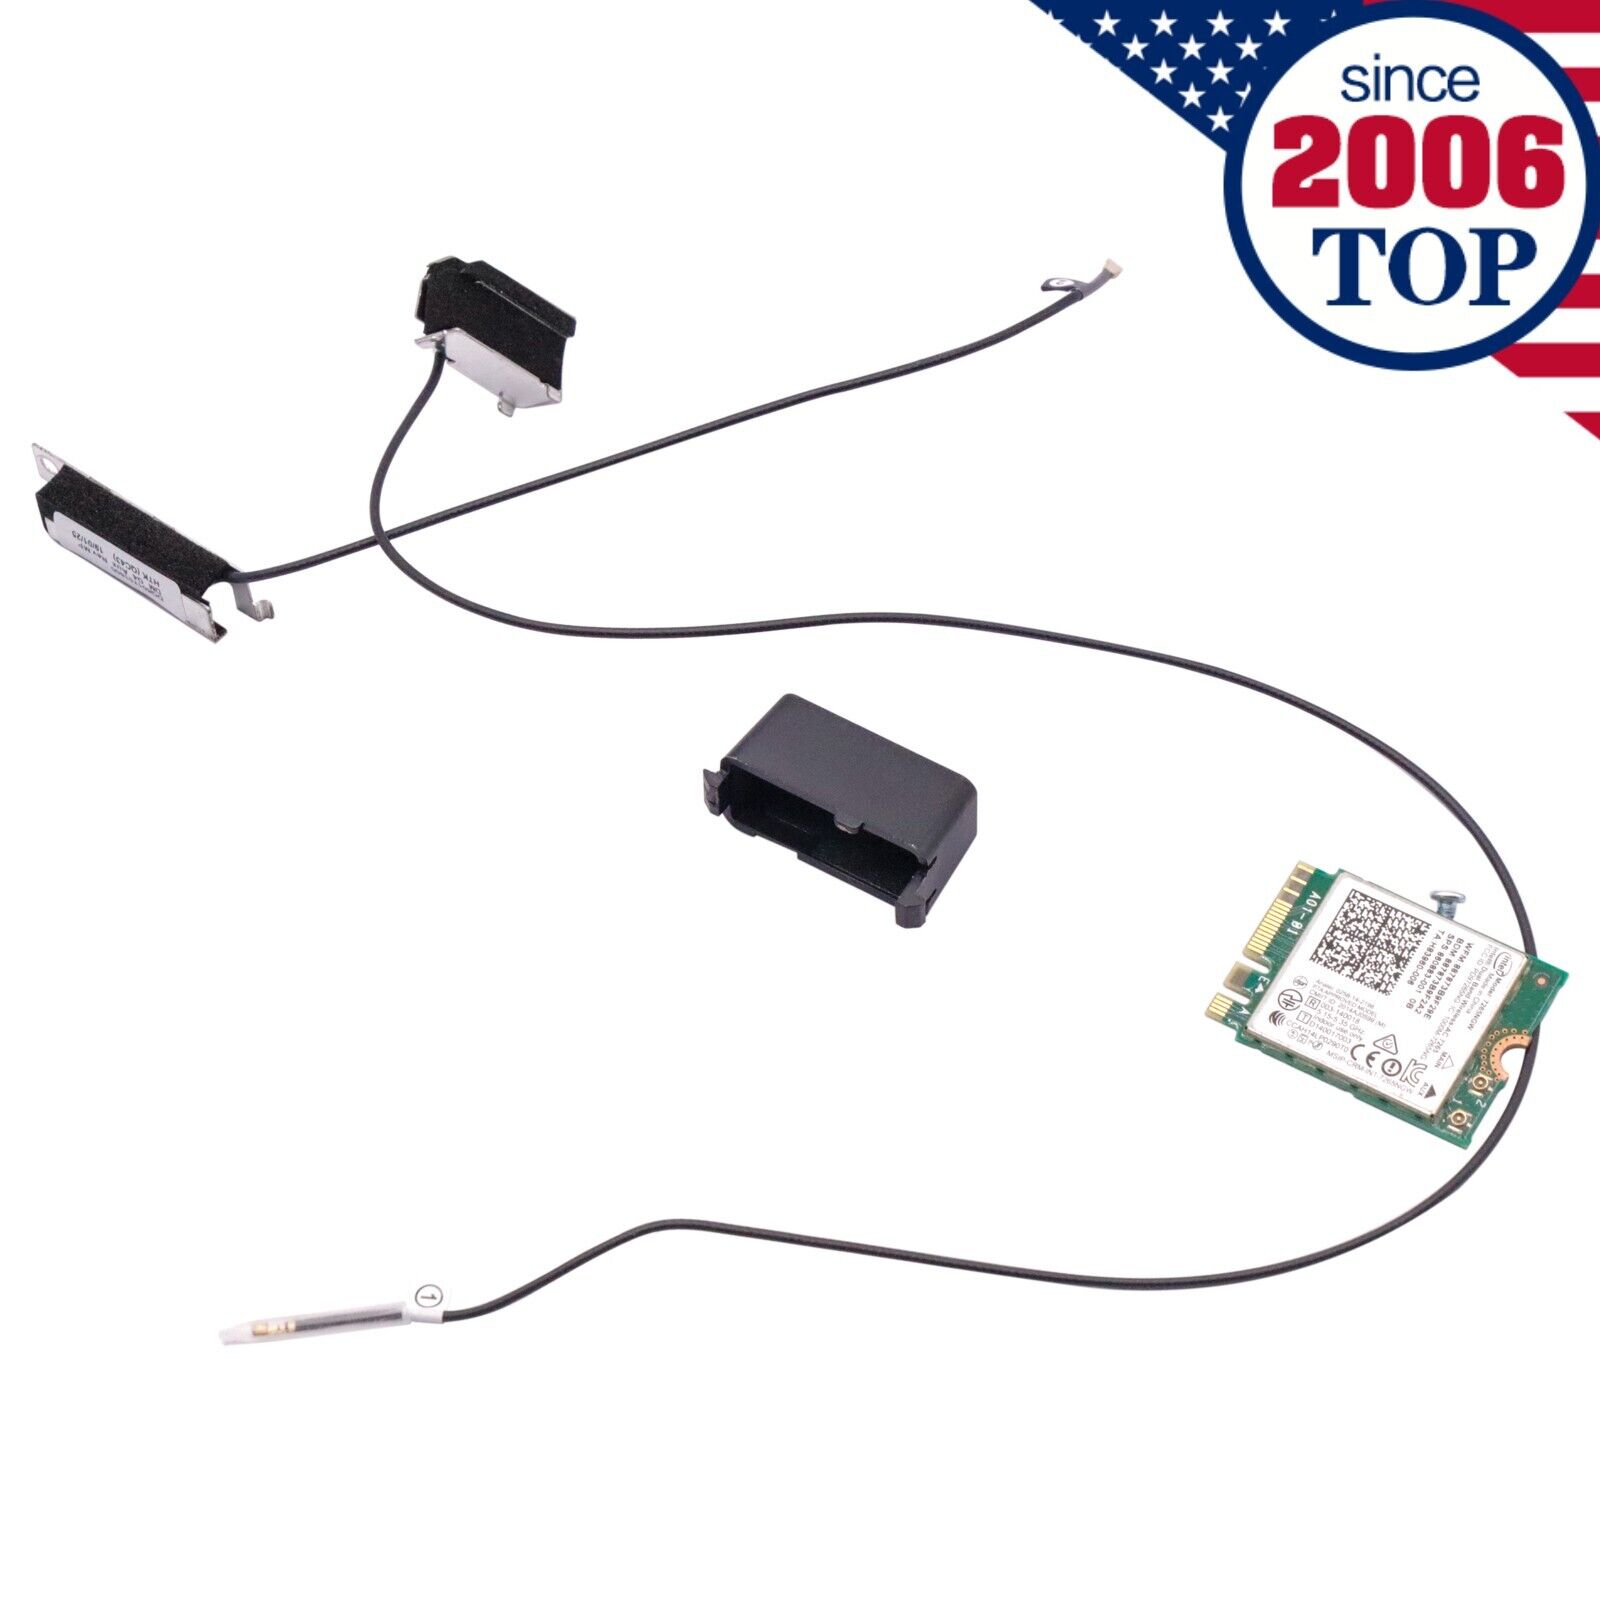 NEW WiFi Antenna Card Cover Kit for HP EliteDesk 800 600 400 G3 DM MINI 7265NGW